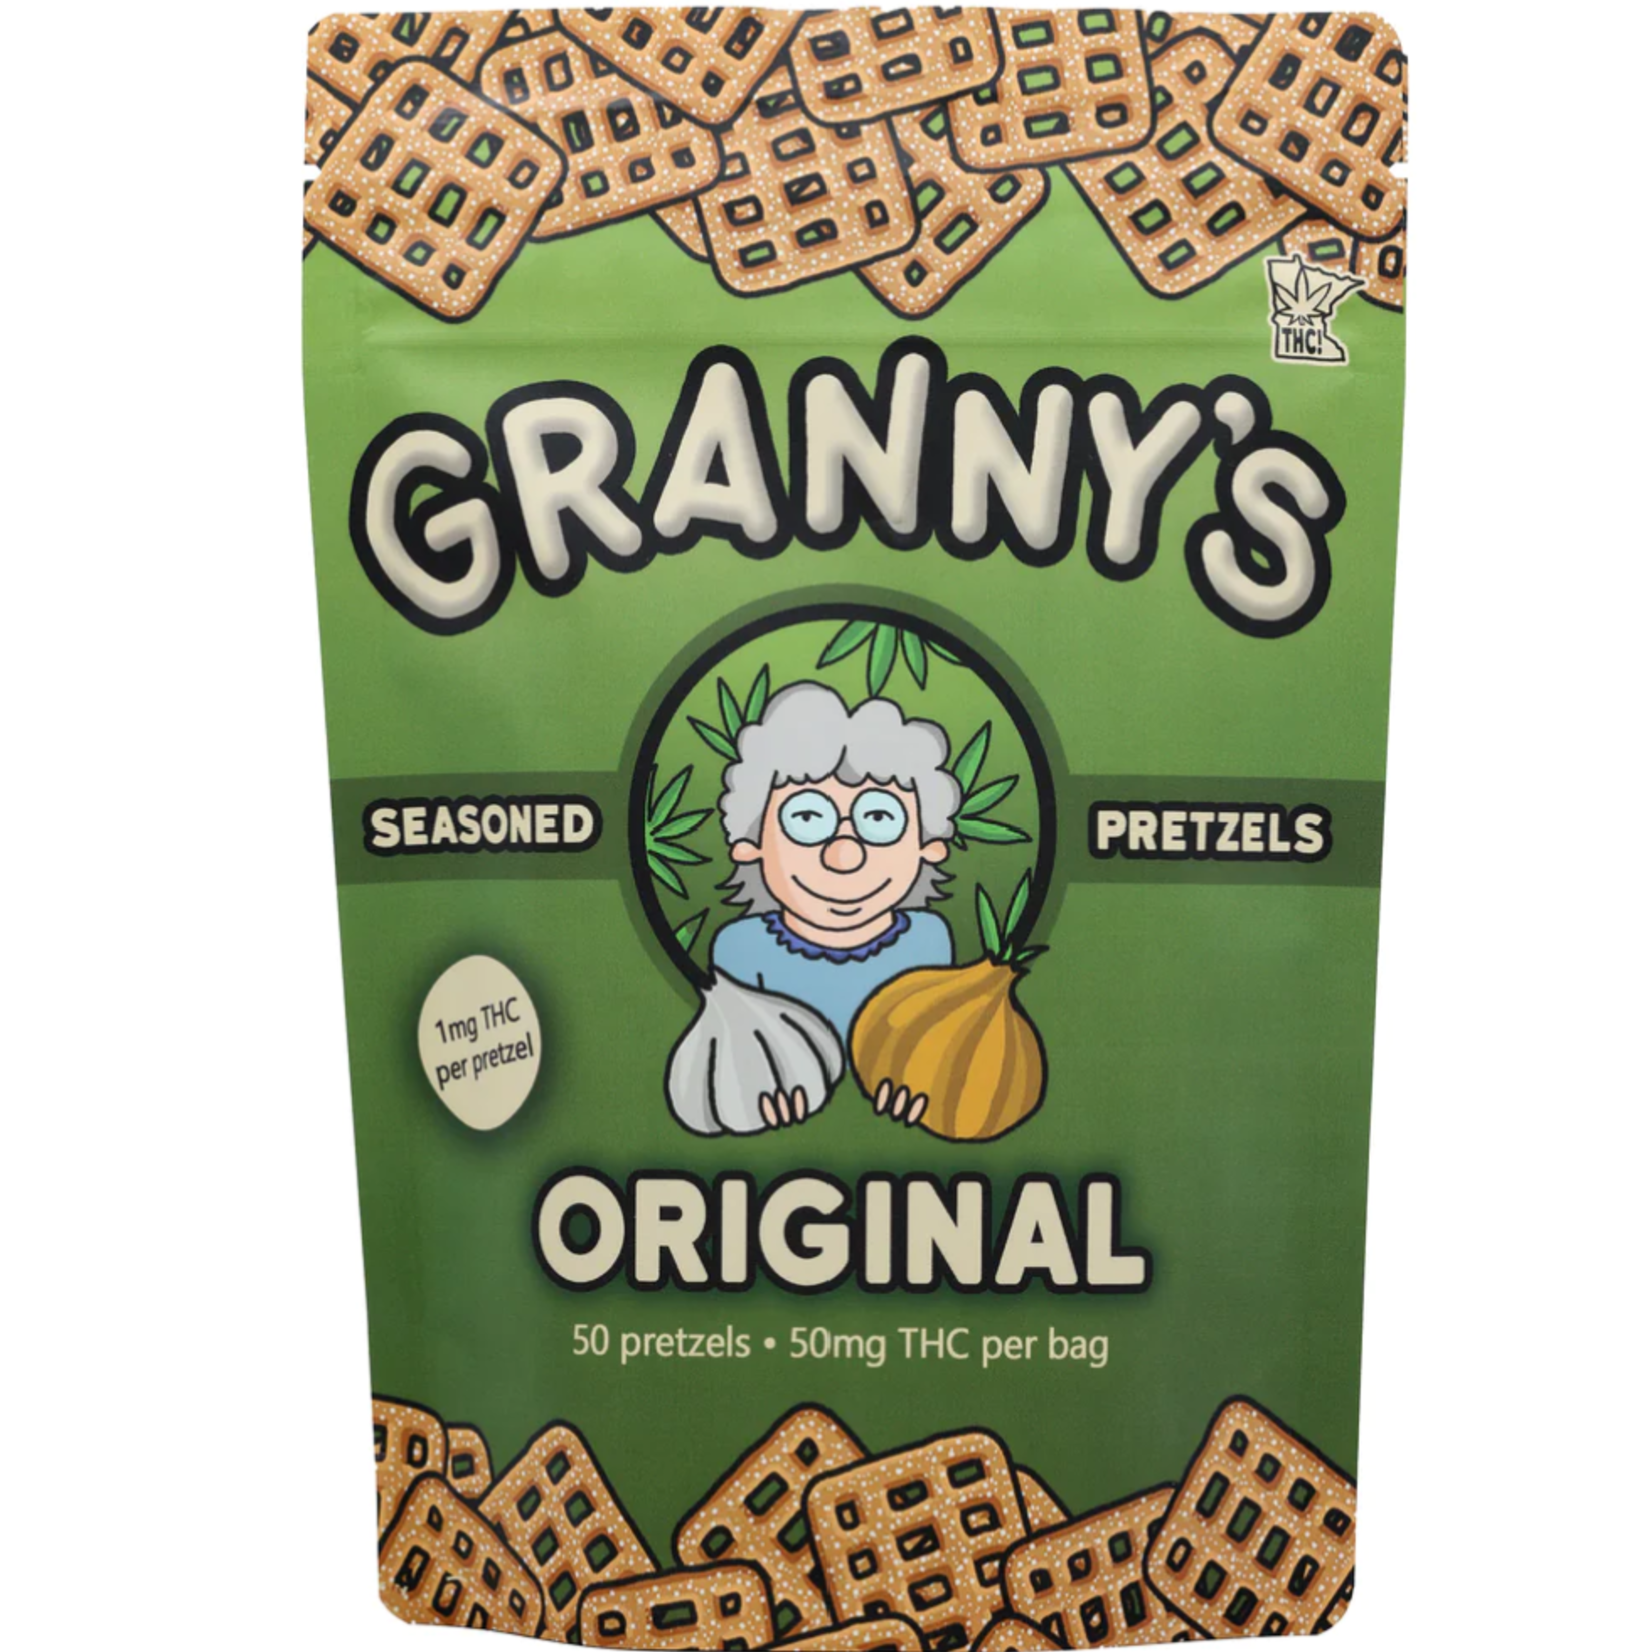 Grannys Grannys Original Pretzels